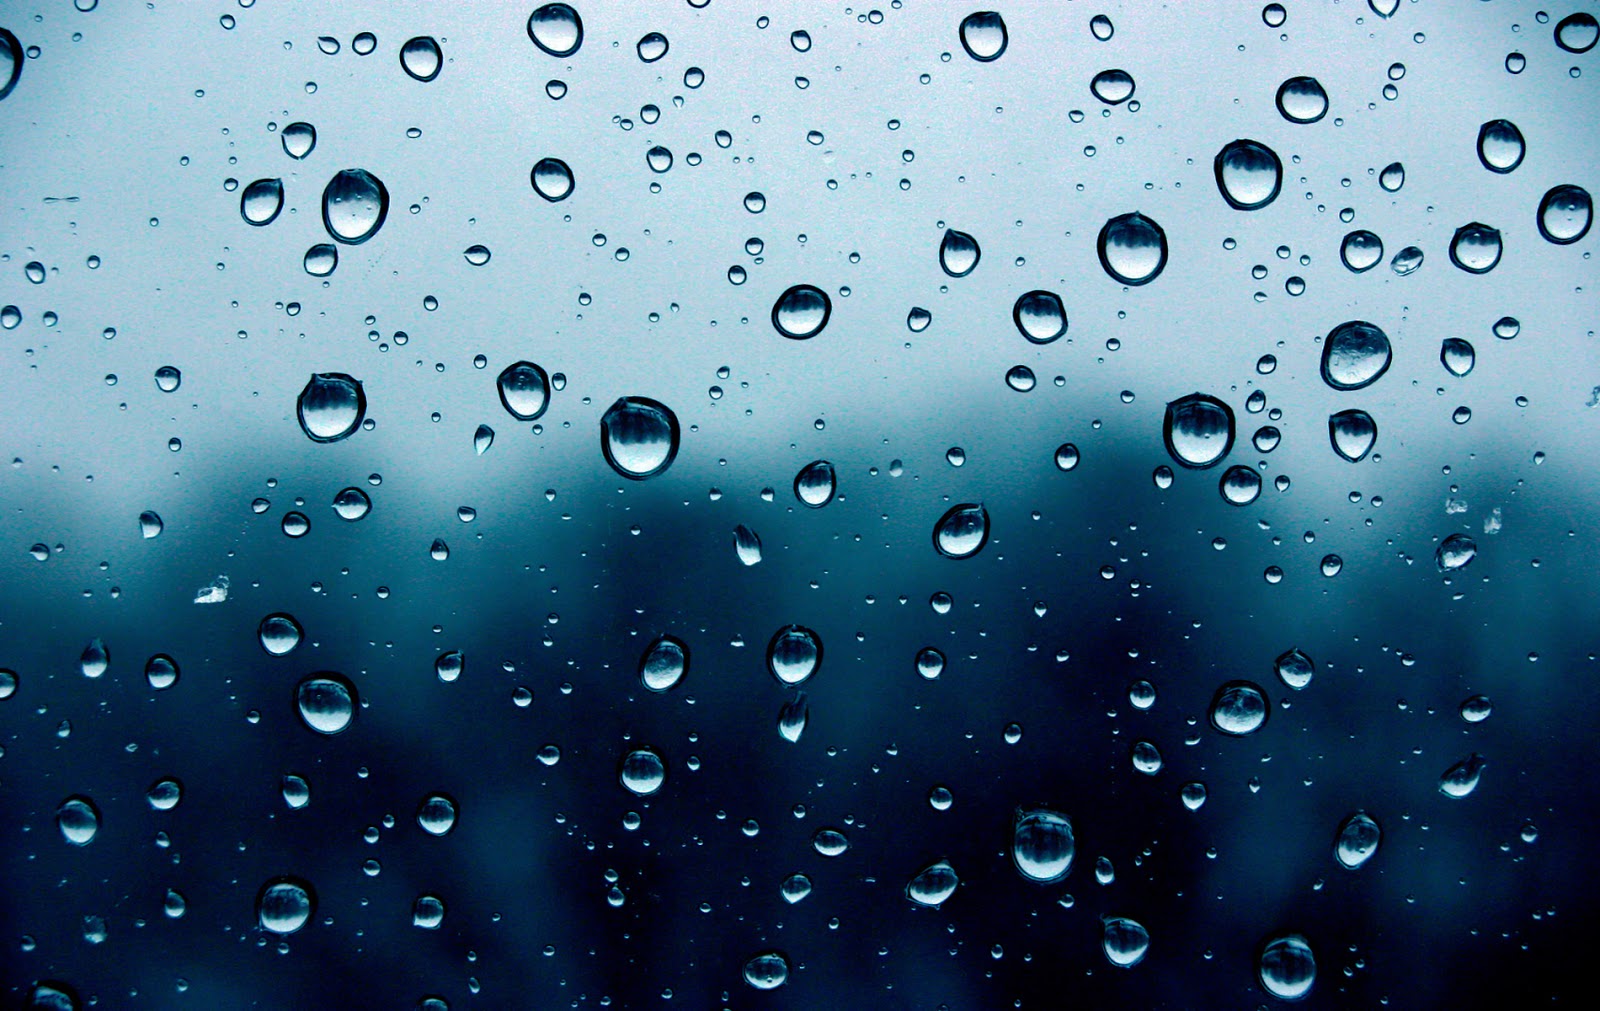 Raining Background HD Image